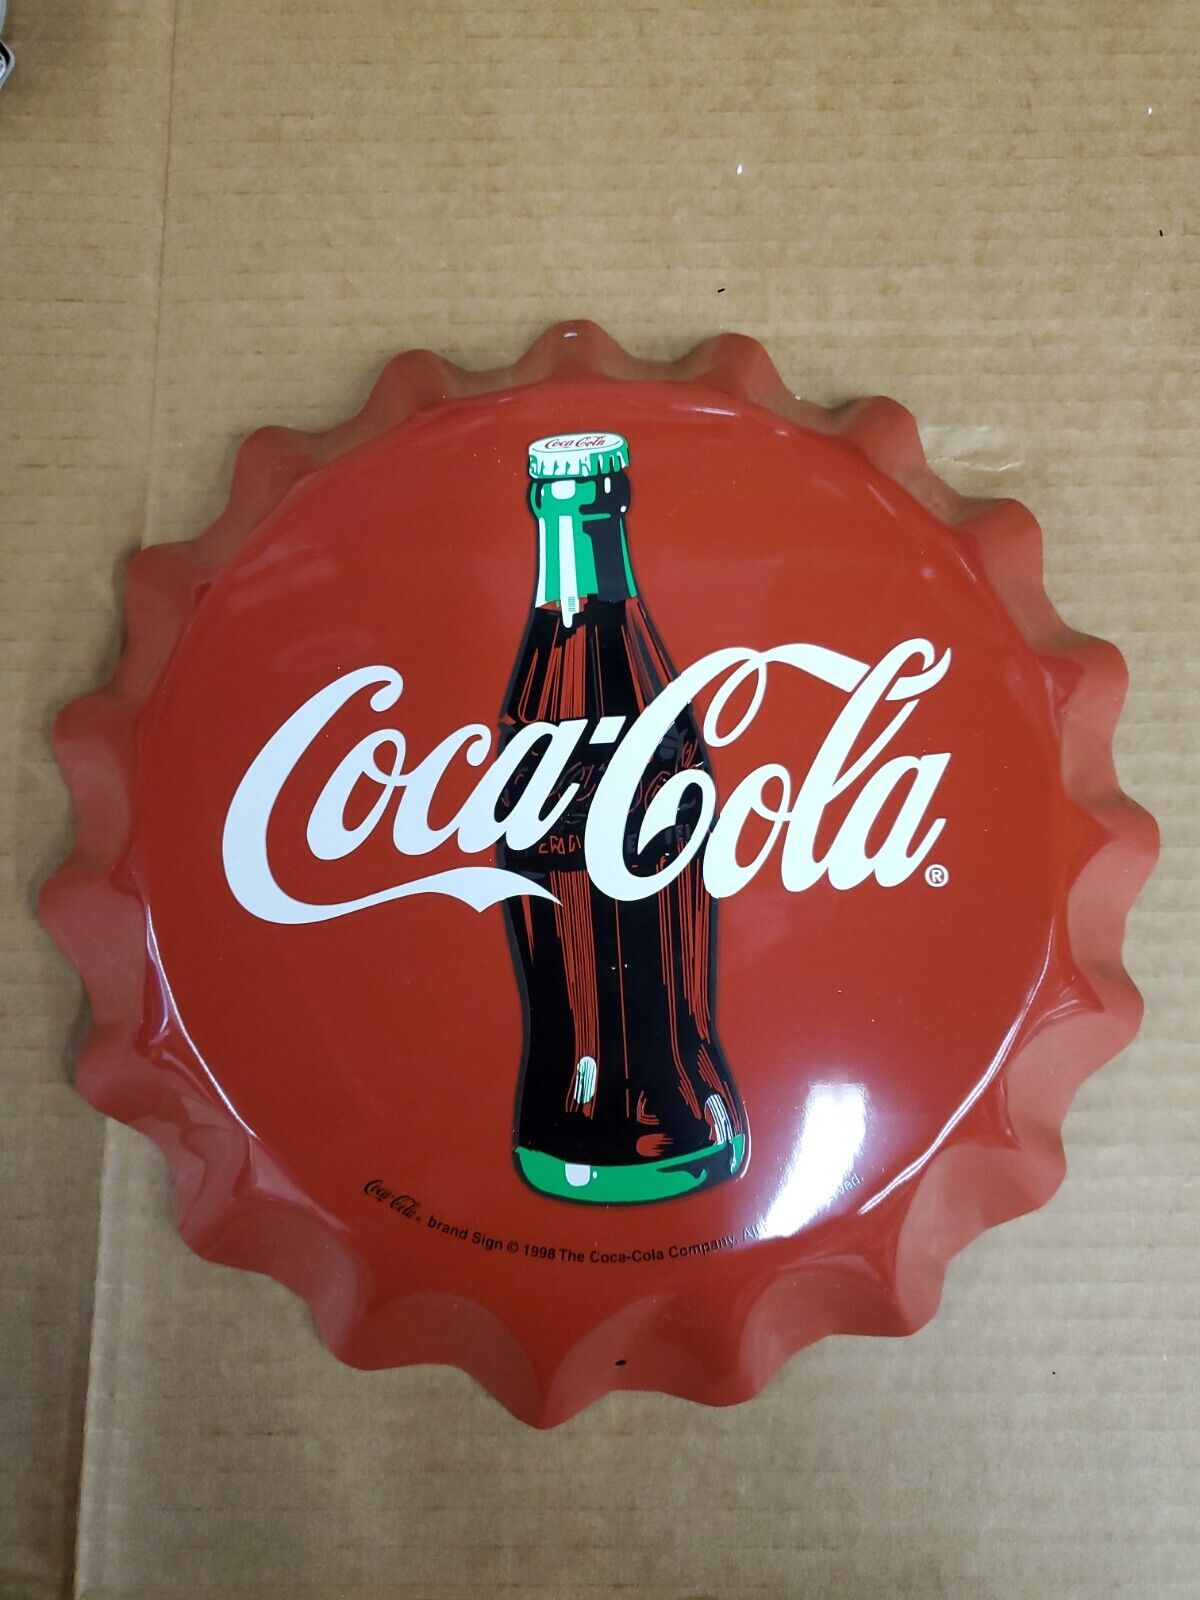 Vintage Coca cola Bottle Cap Sign D